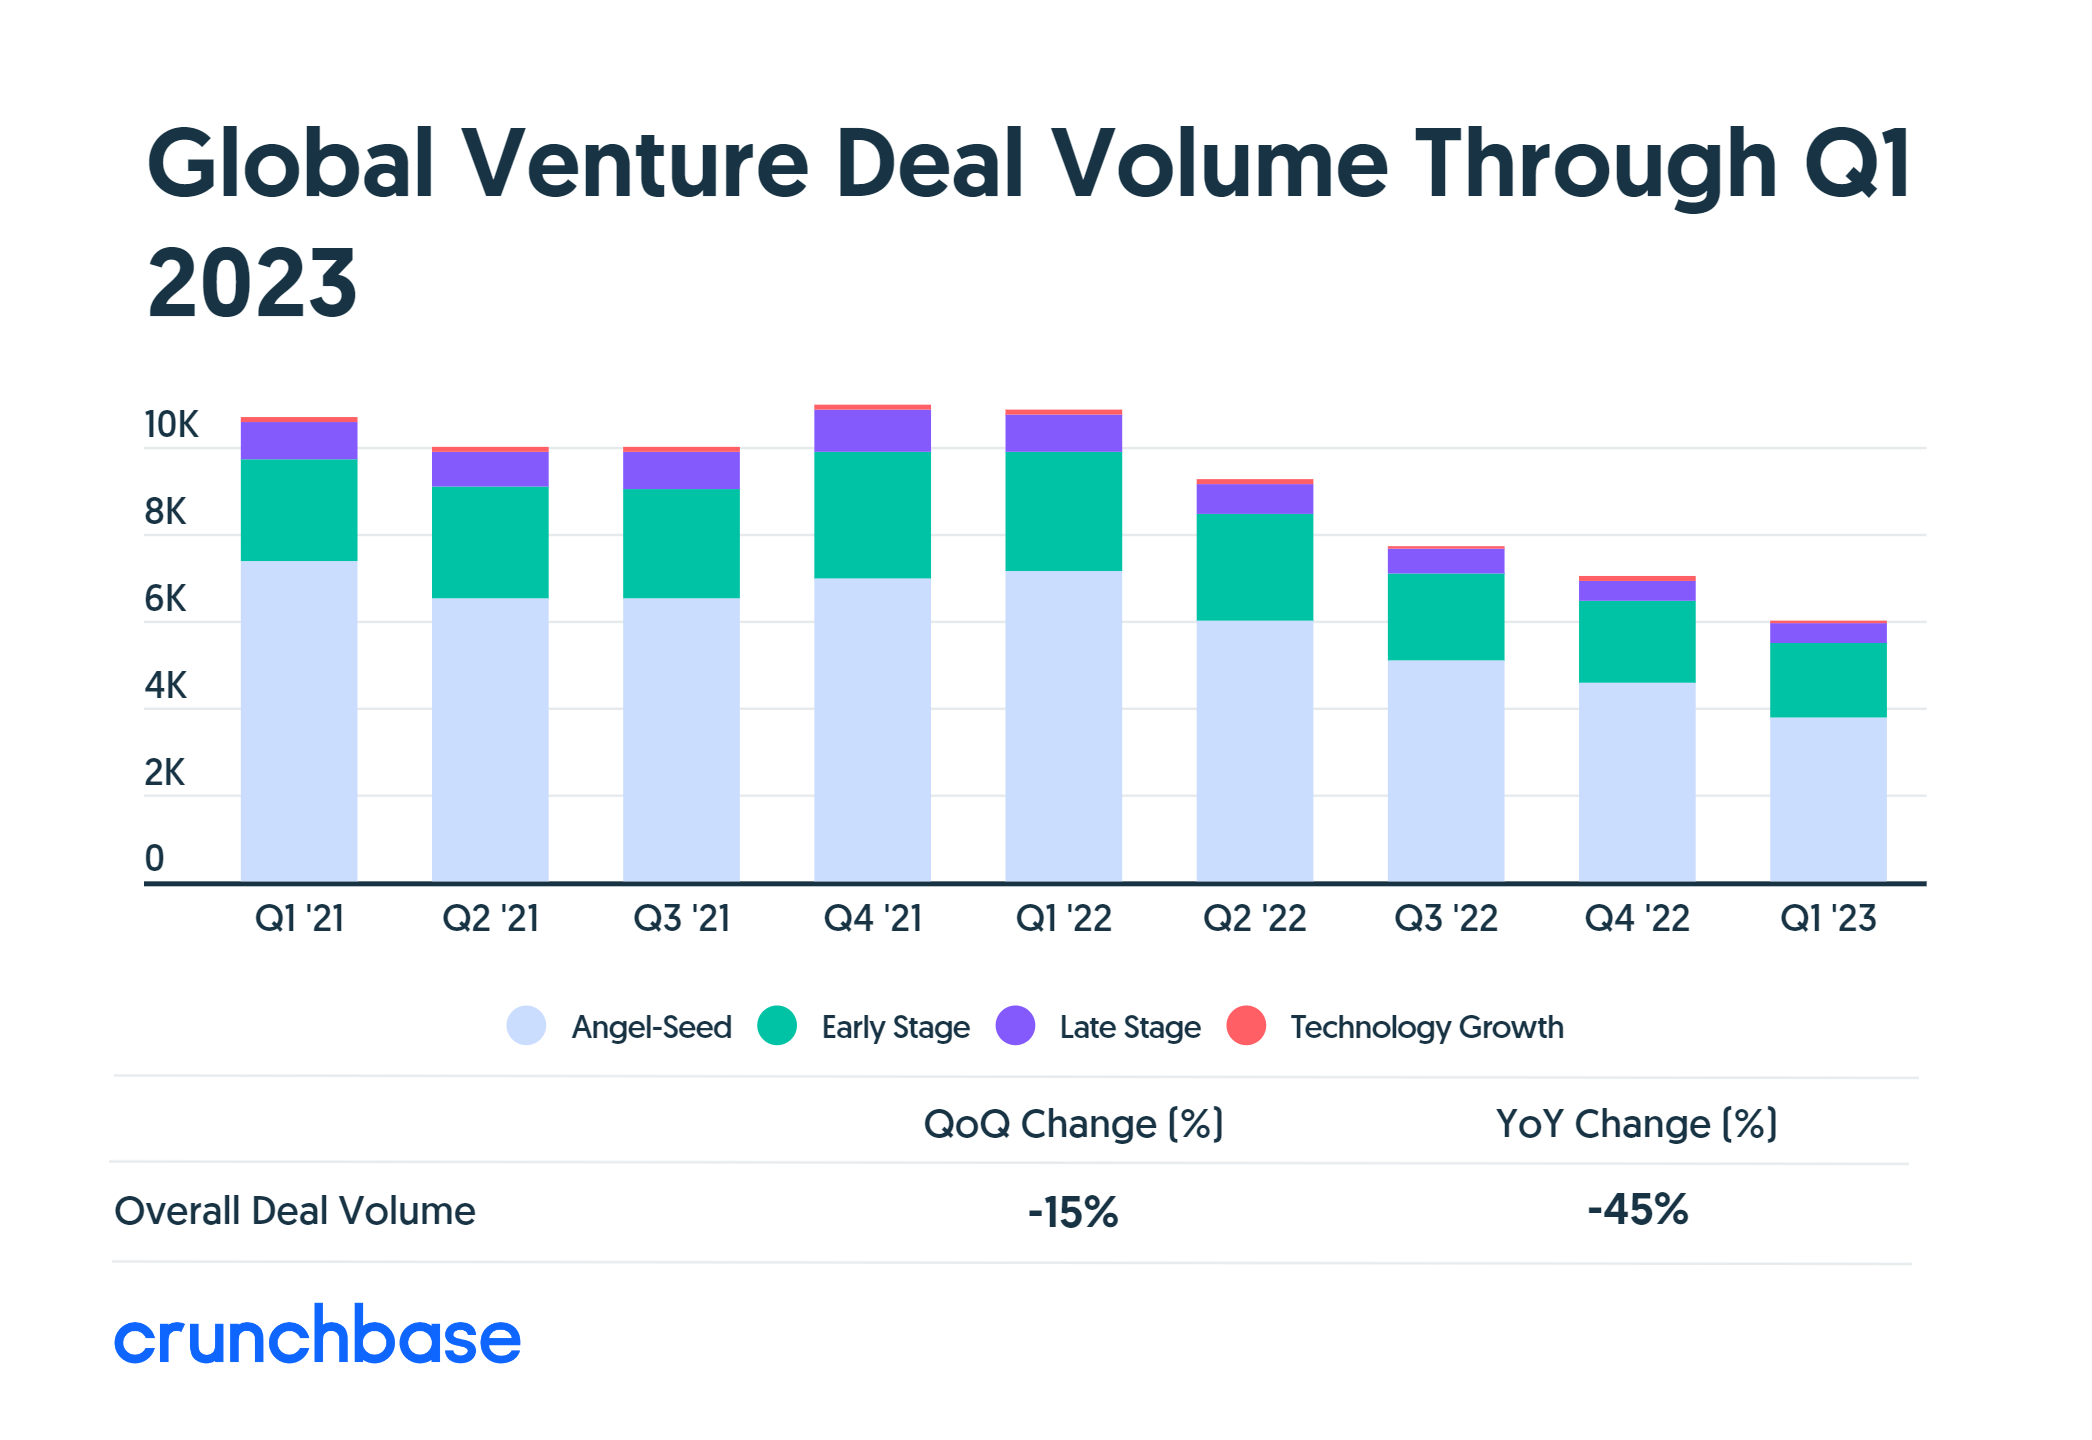 Global Venture Deal Volume Through Q1 2023, Cruchbase